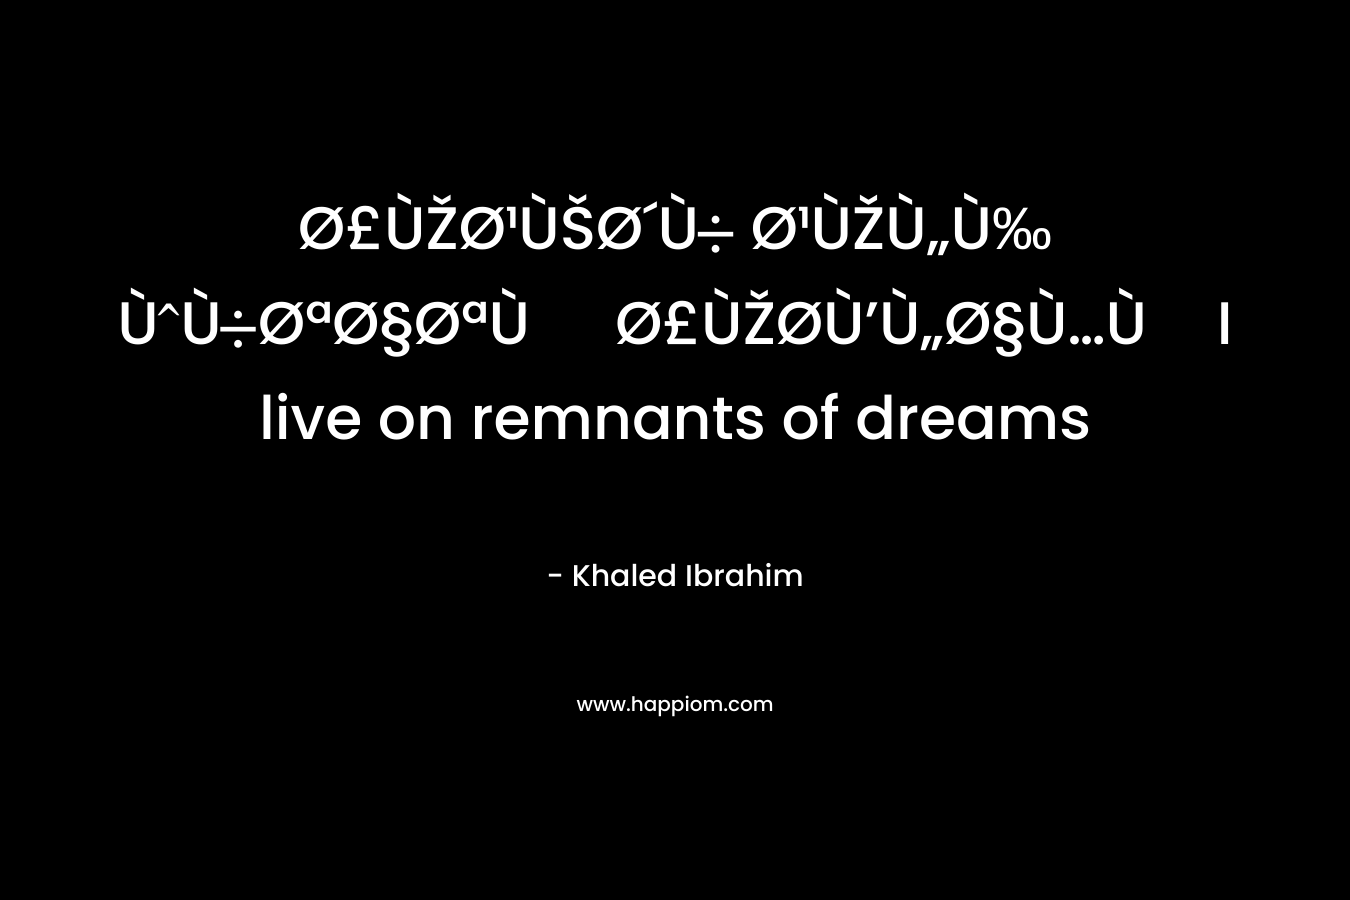 Ø£ÙŽØ¹ÙŠØ´Ù Ø¹ÙŽÙ„Ù‰ ÙÙØªØ§ØªÙ Ø£ÙŽØ­Ù’Ù„Ø§Ù…ÙI live on remnants of dreams – Khaled Ibrahim